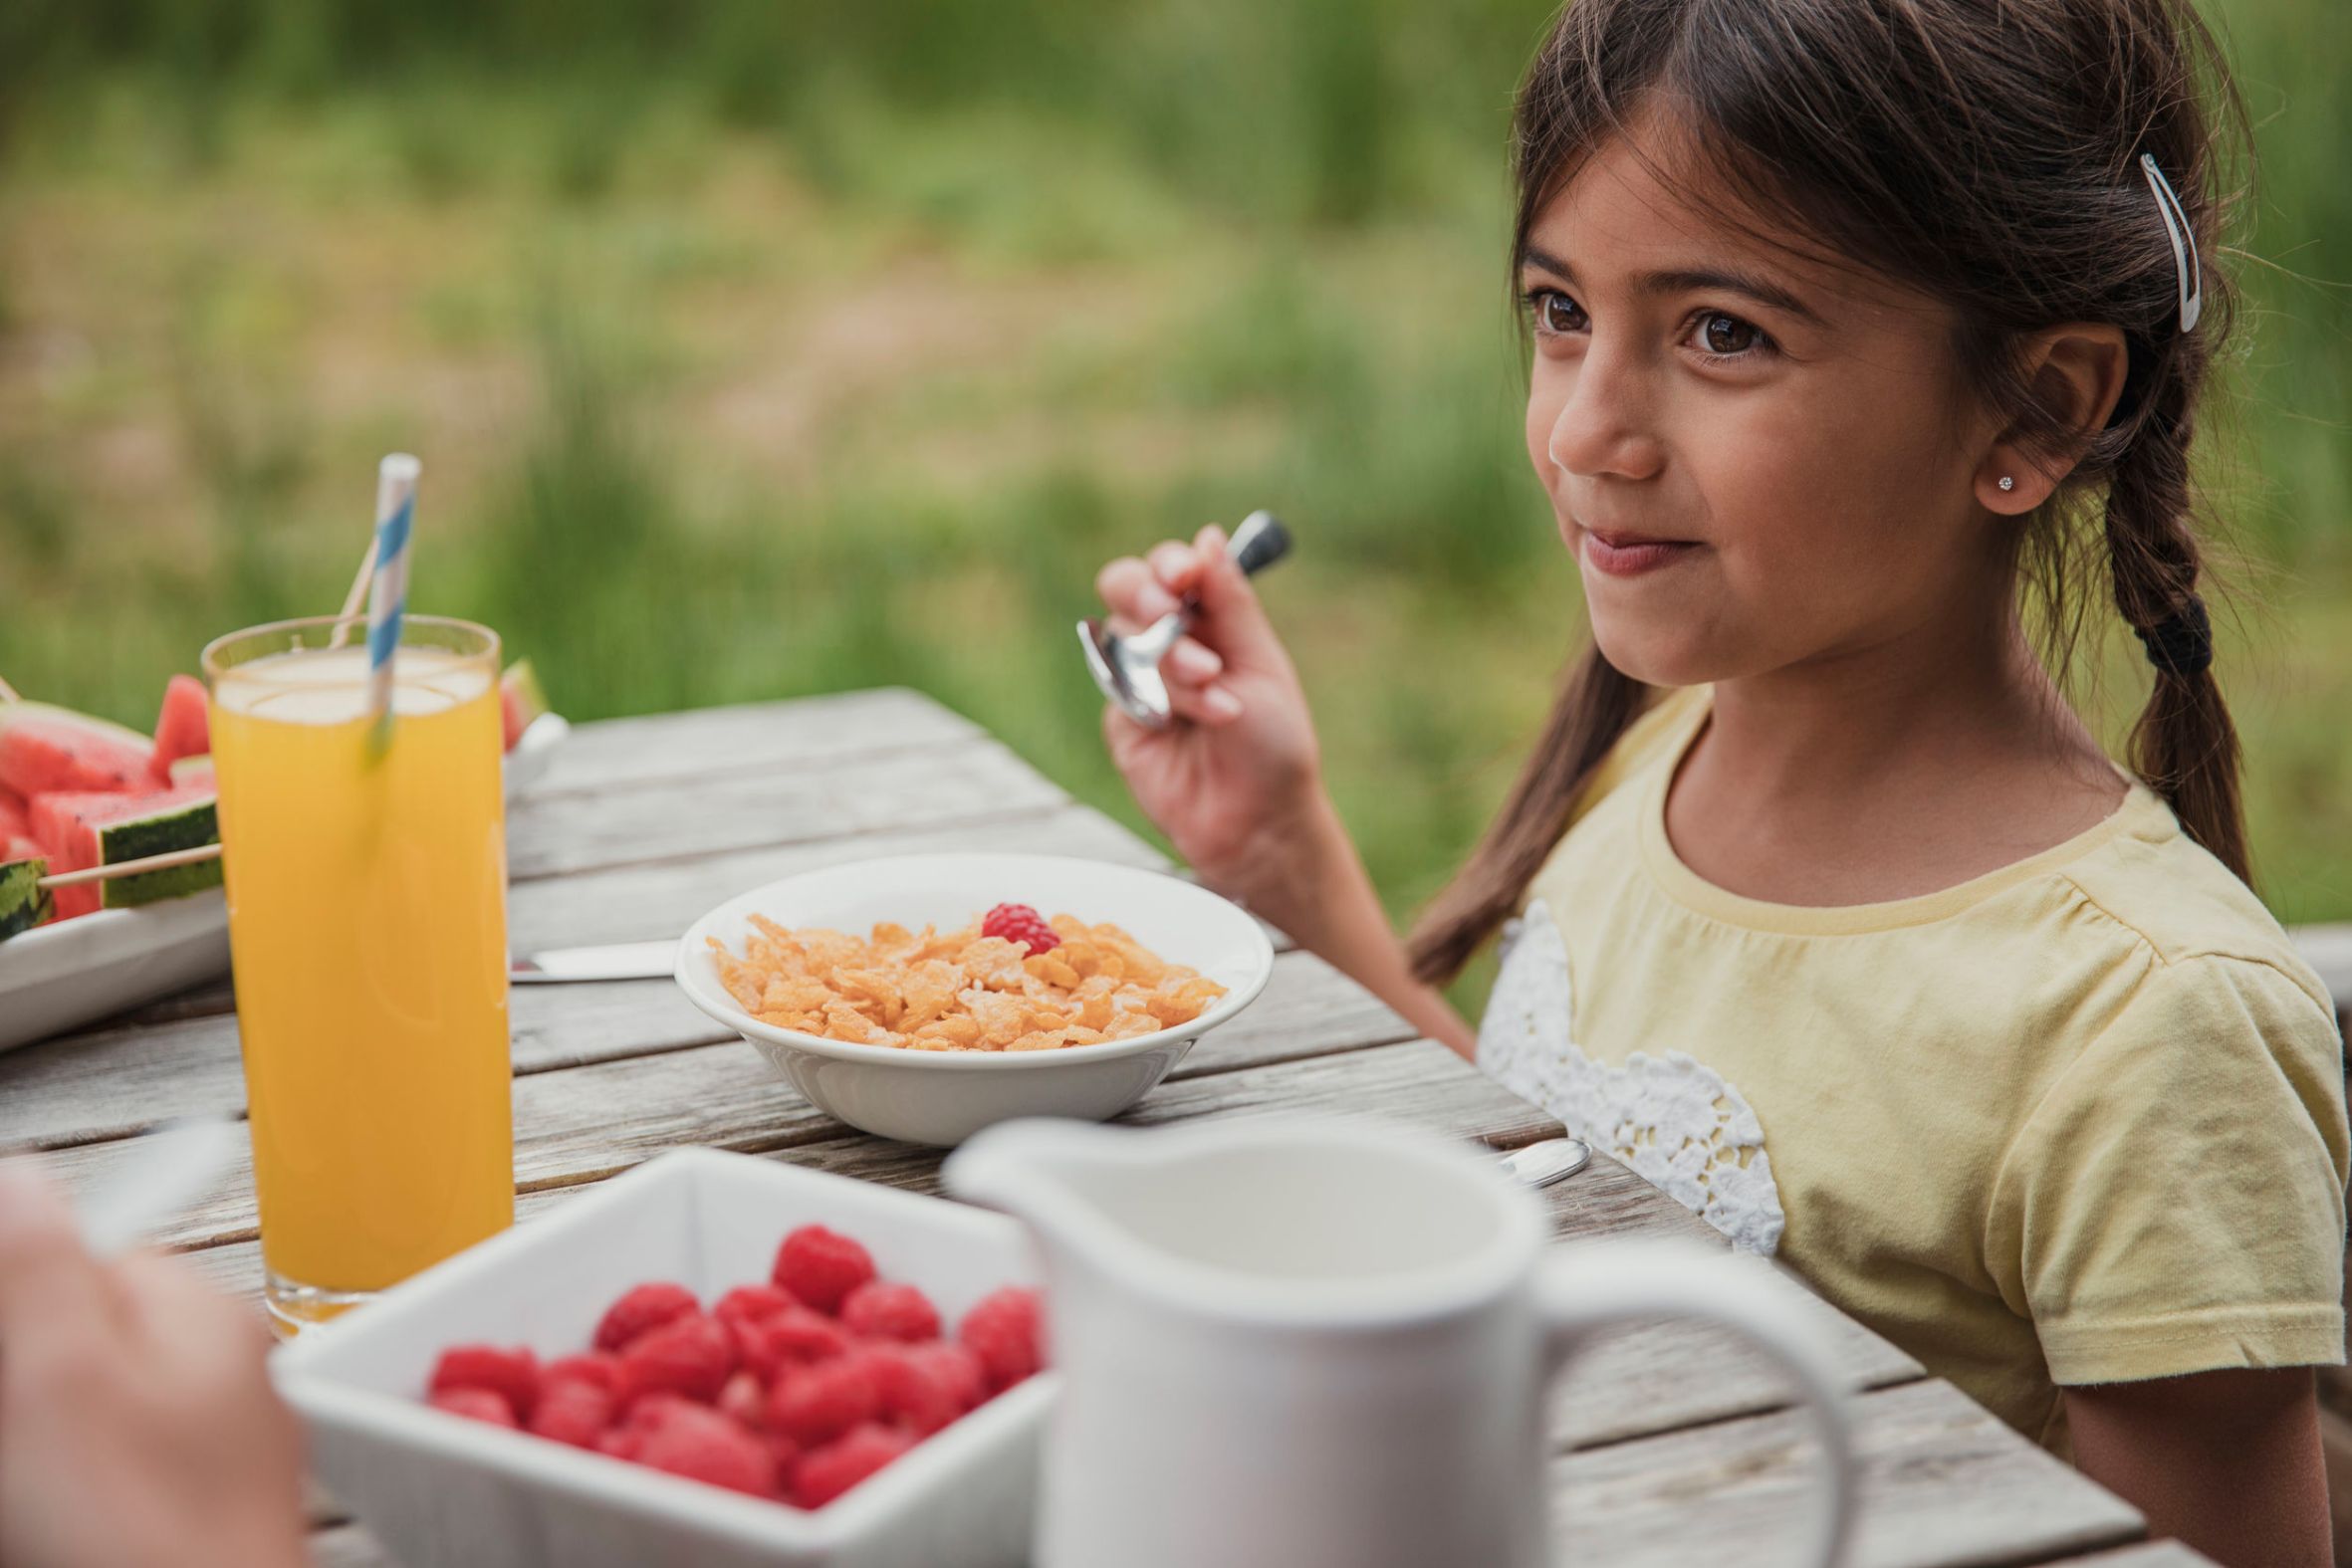 L'alimentazione dei bambini dai 4 ai 10 anni | Consigli | Conad